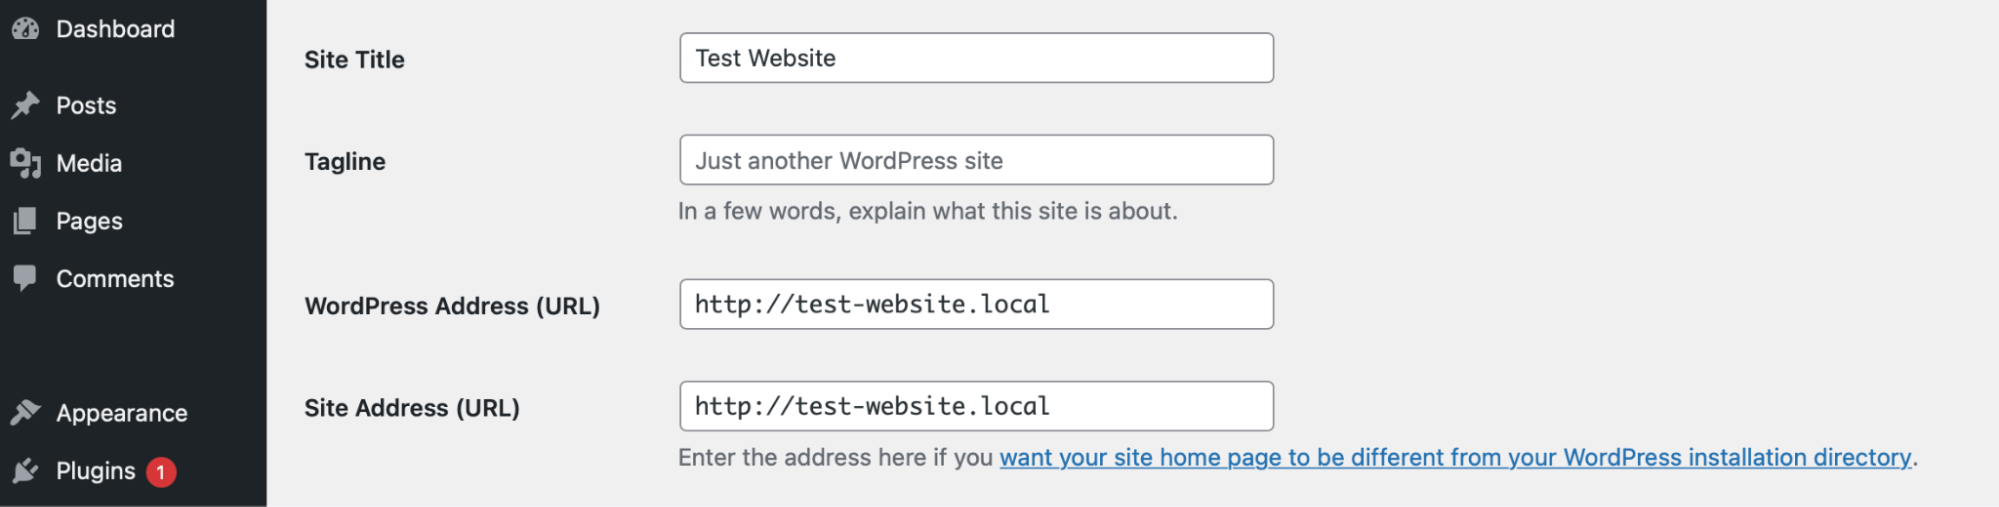 actualizar las direcciones de WordPress y del sitio dentro del tablero